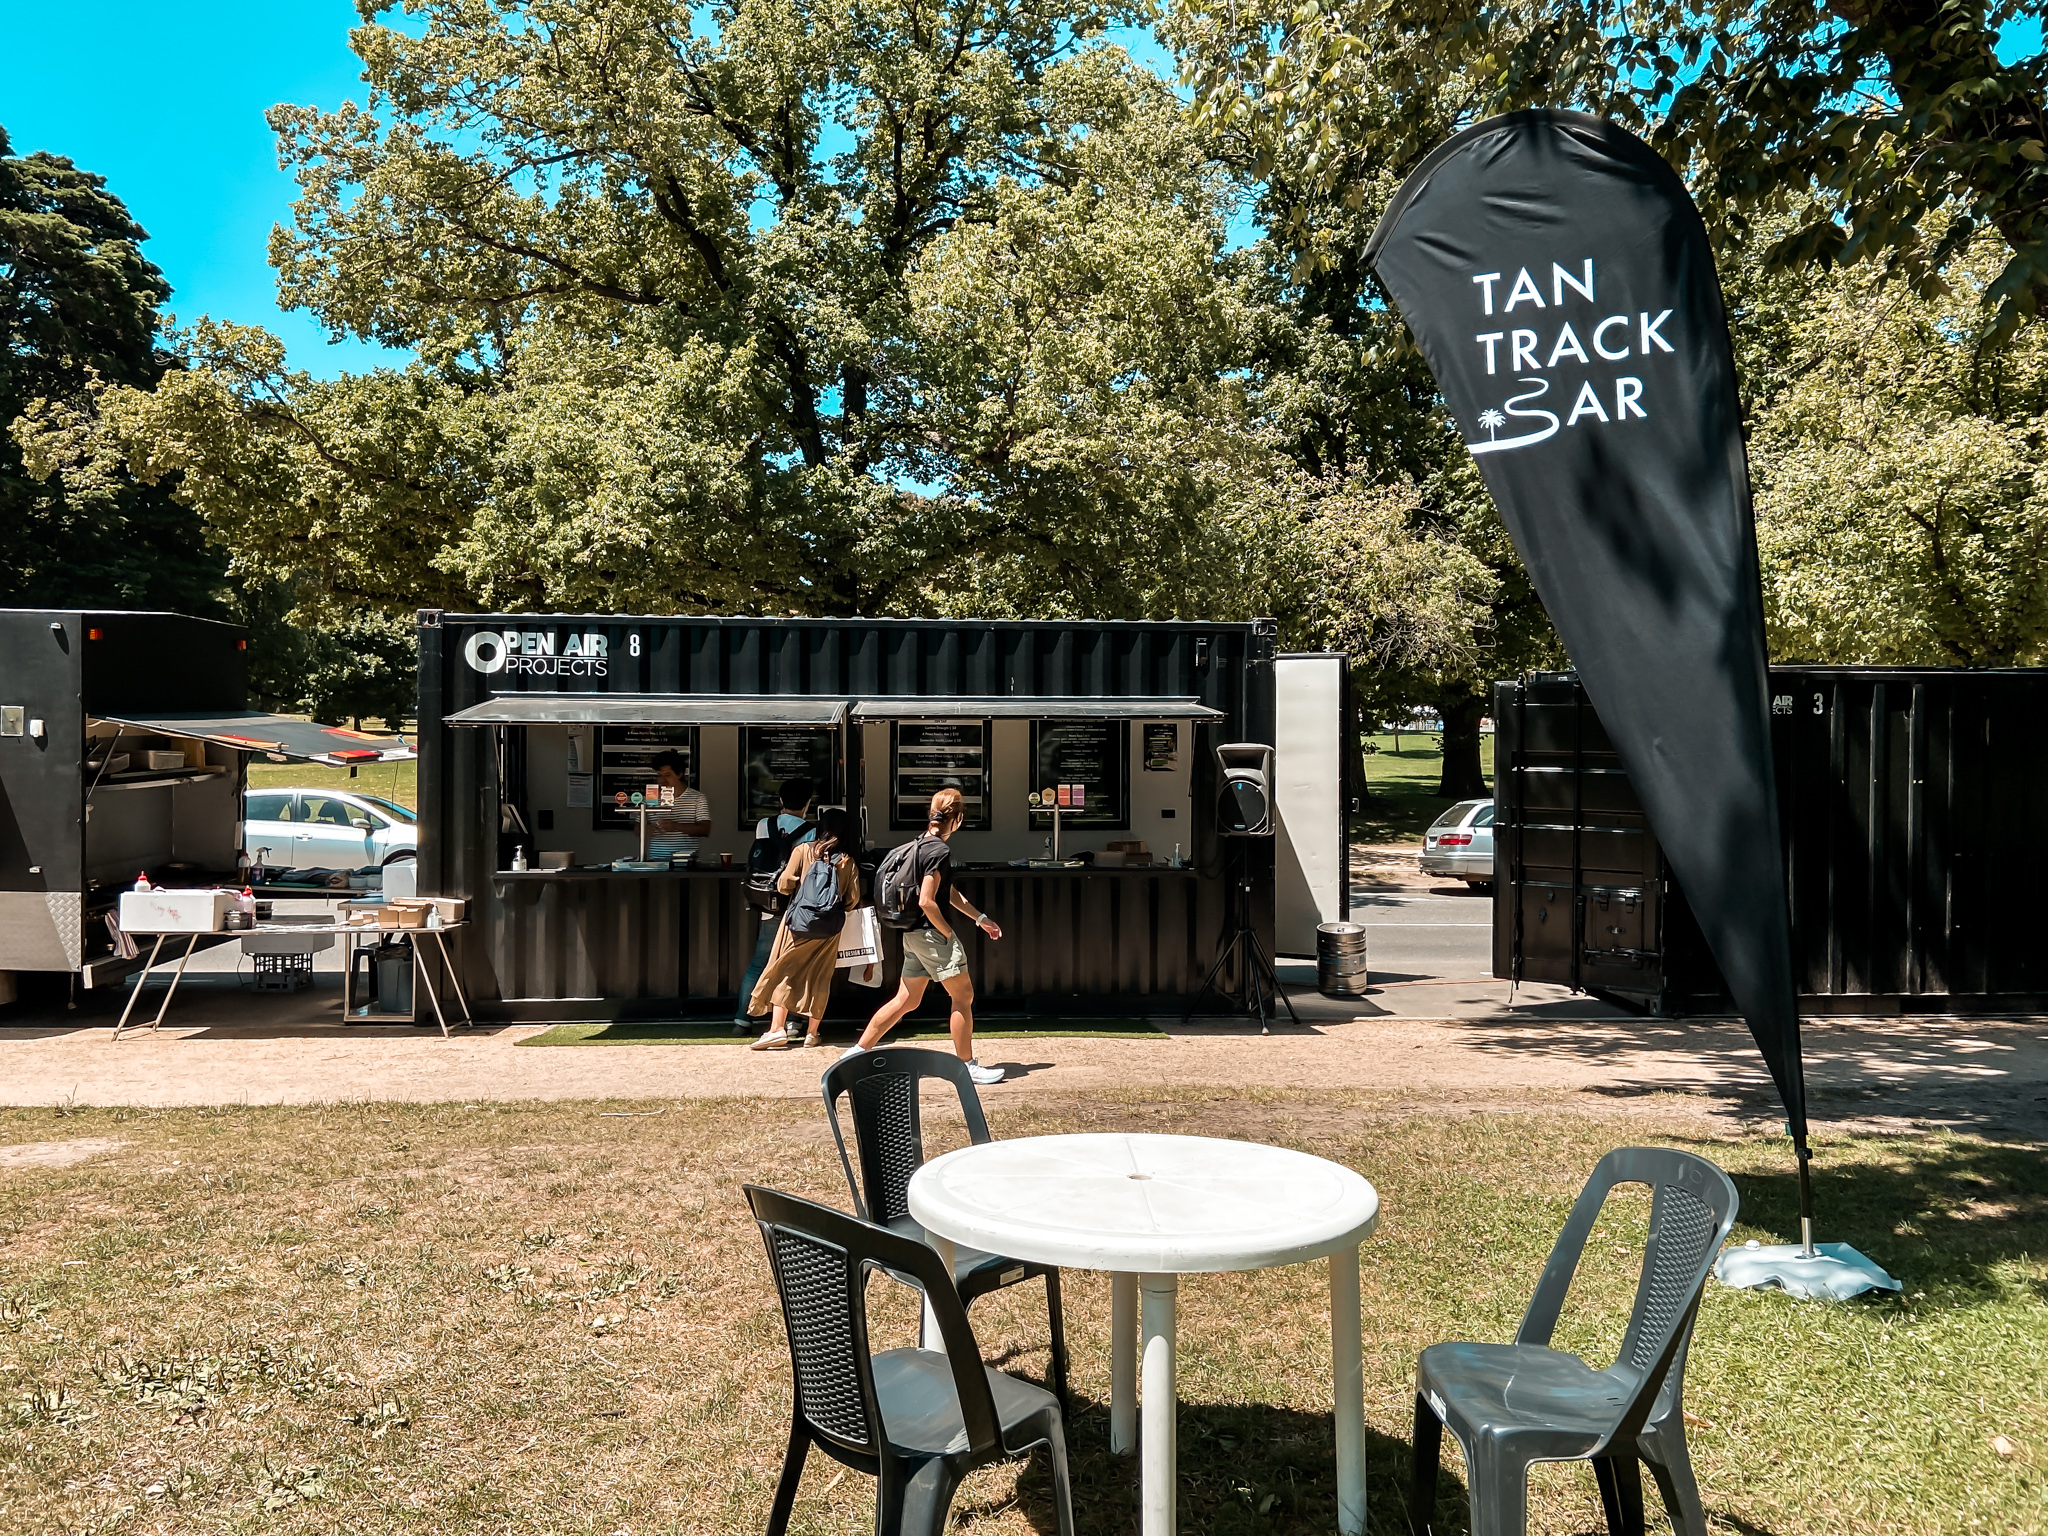 Melbourne's Pop Up Tan Track Bar 